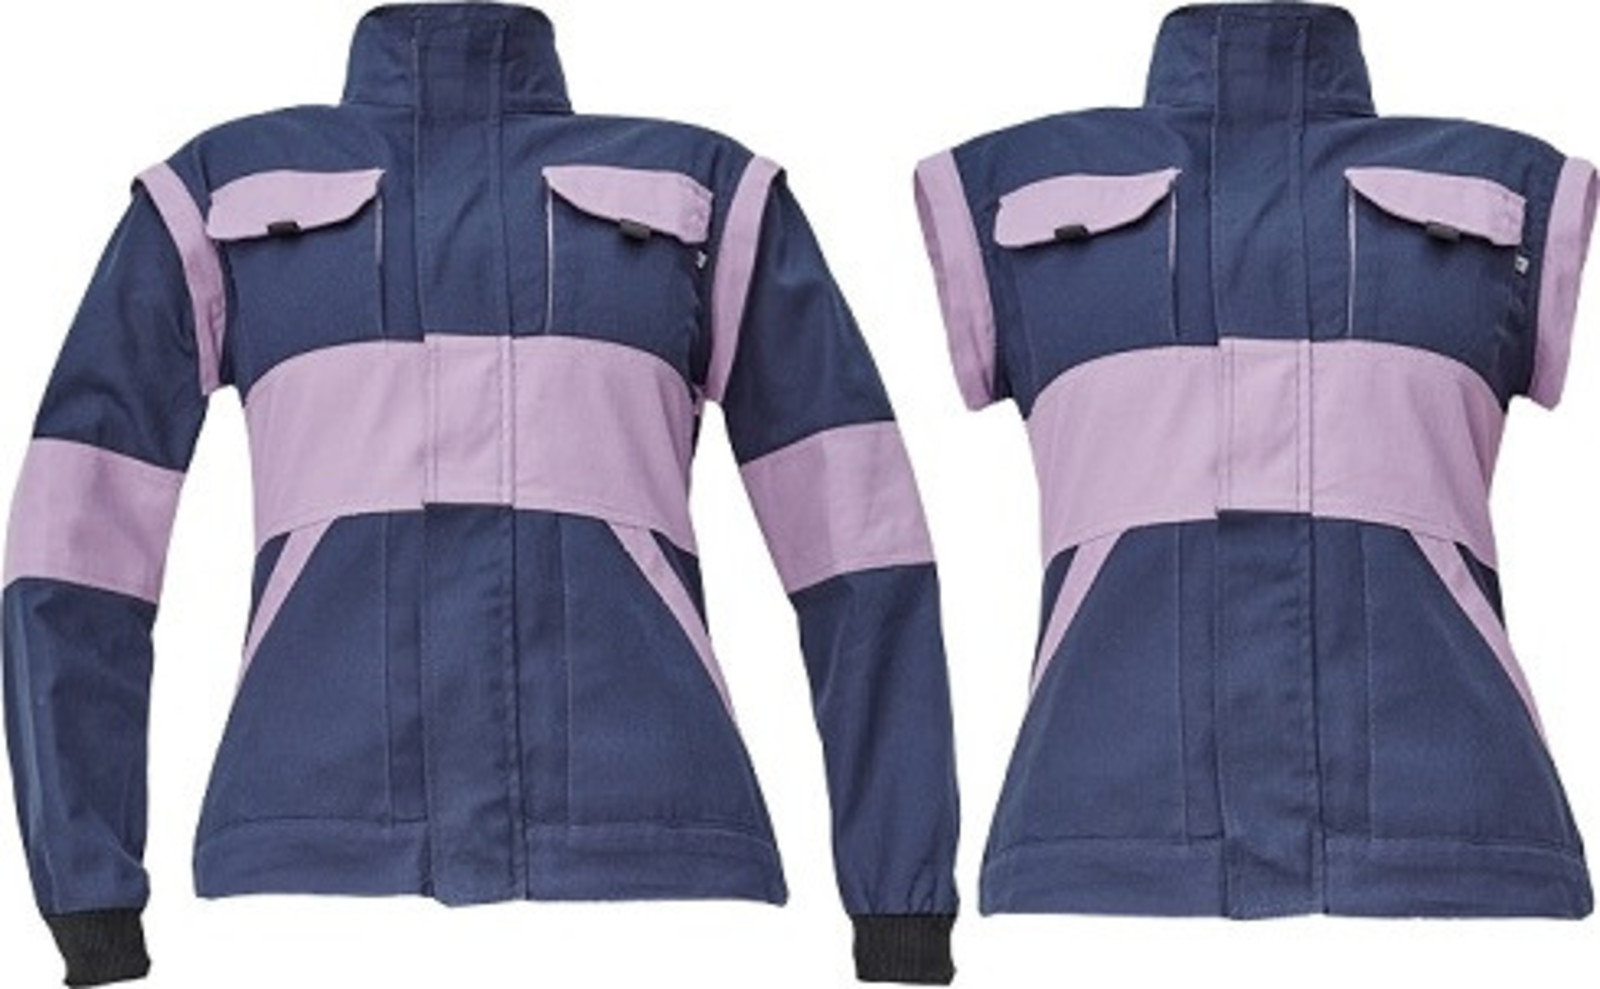 Dámska bavlnená montérková bunda Cerva Max Neo Lady 2v1 - veľkosť: 52, farba: navy lila